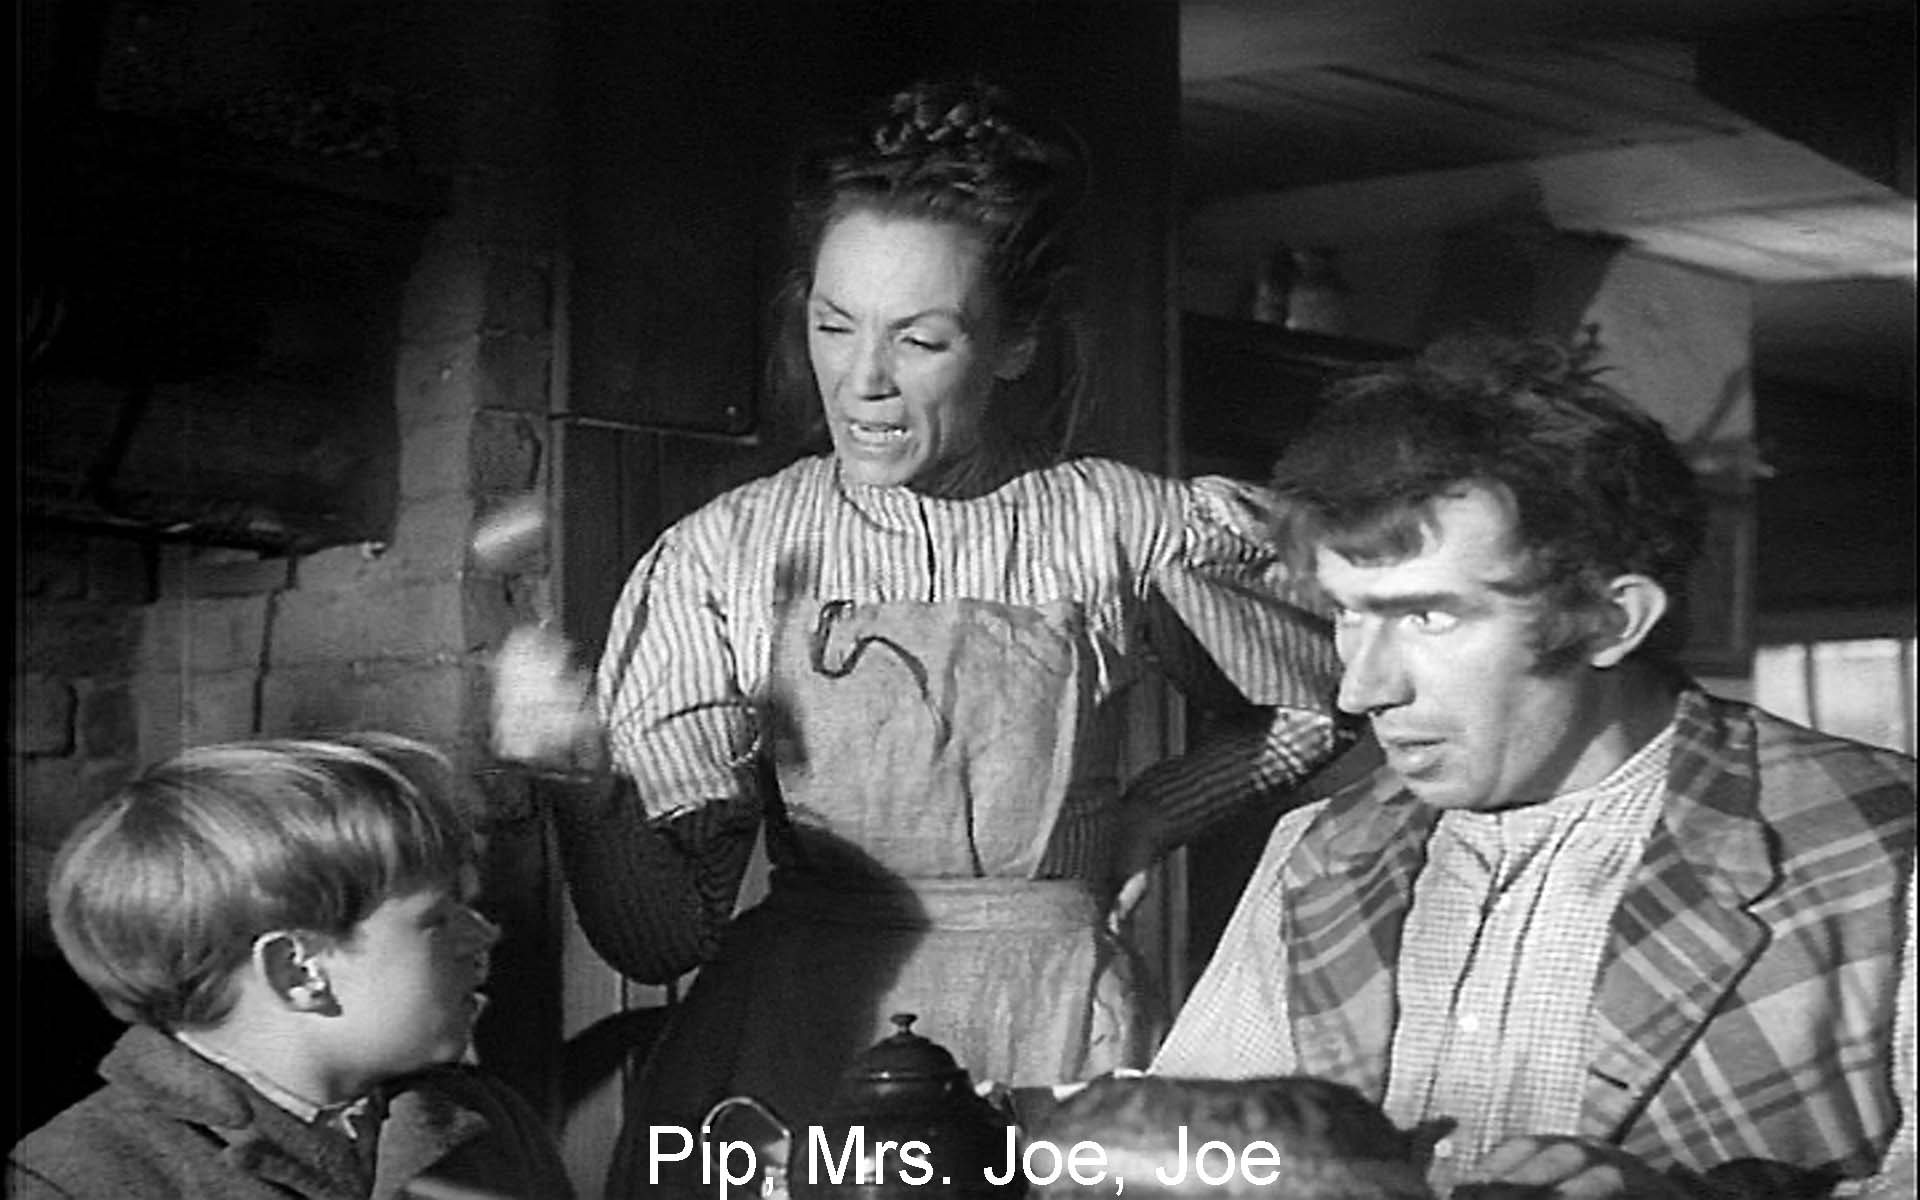 Pip, Mrs. Joe, Joe